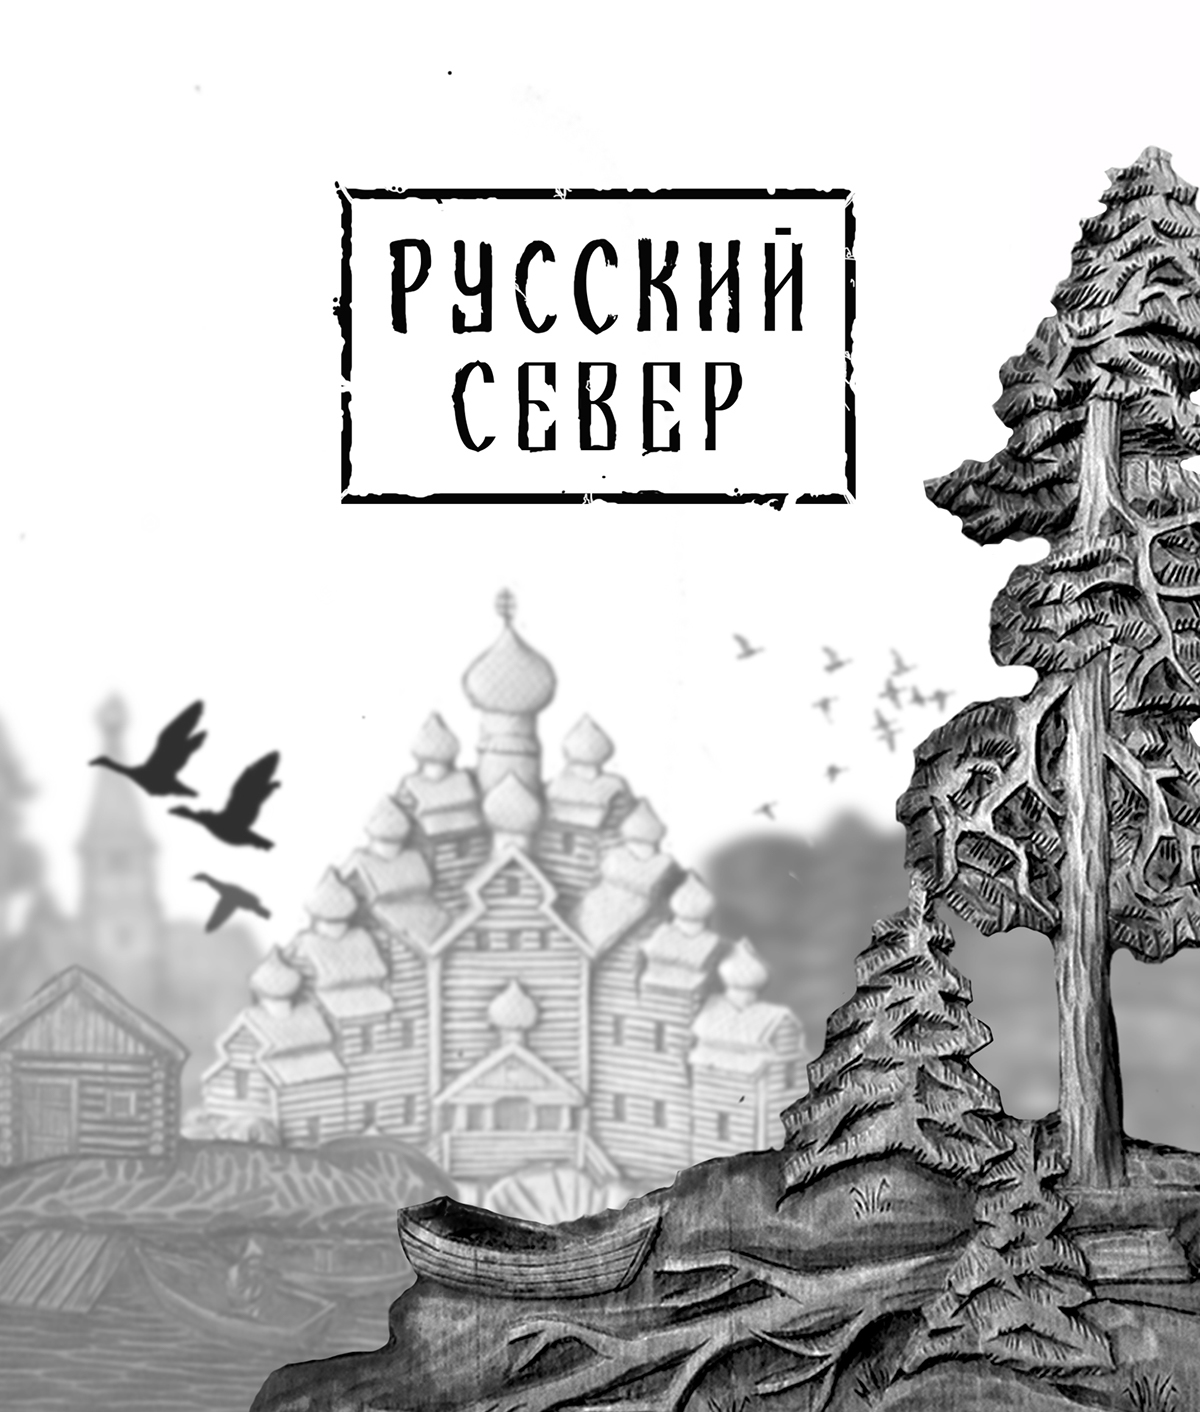 дерево русские узоры русский север russian carving wood